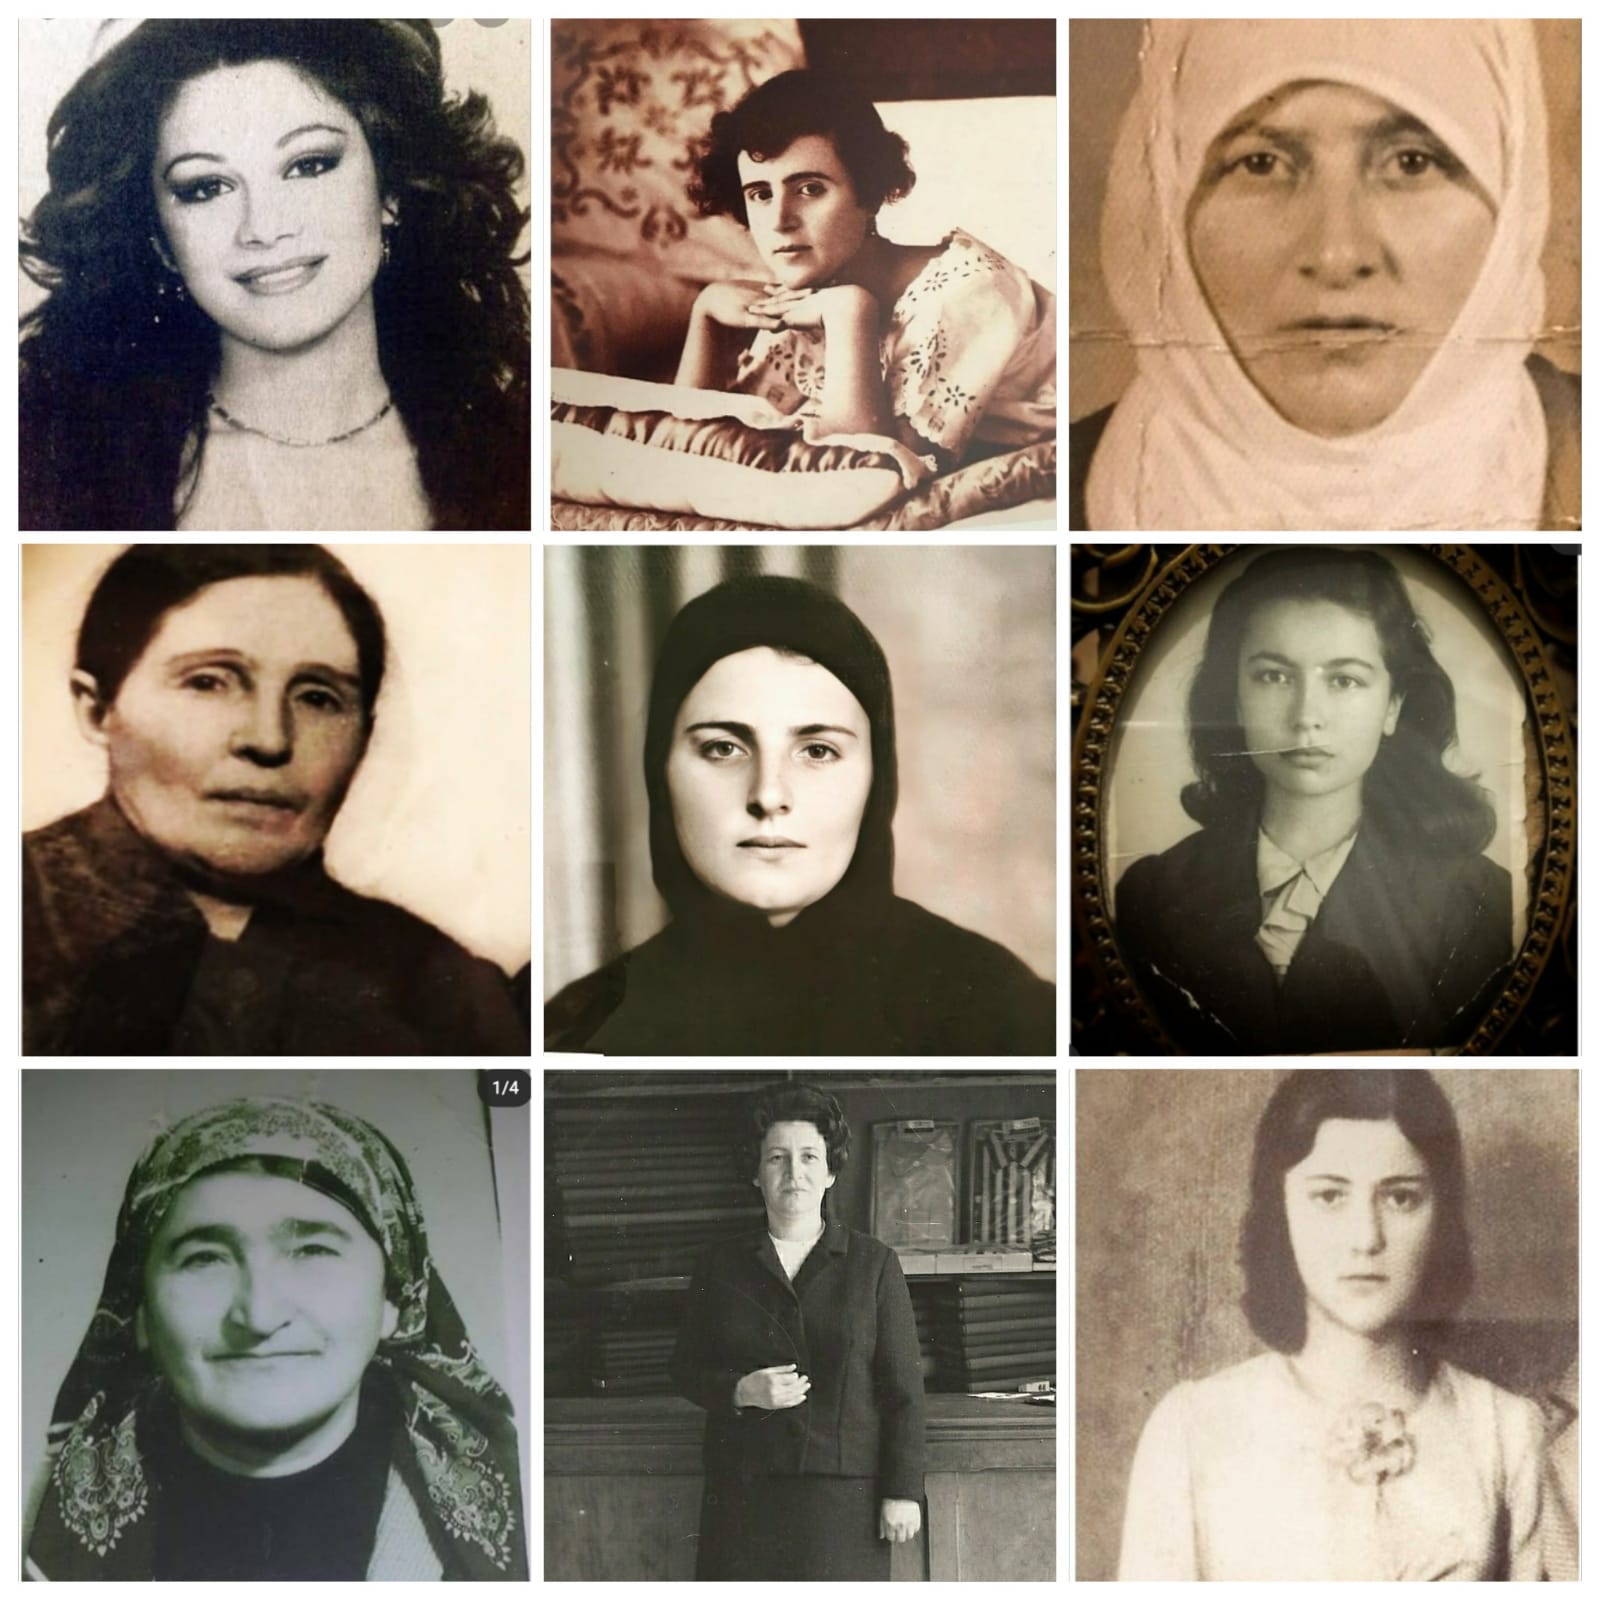 Sayfadan kadın portreleri